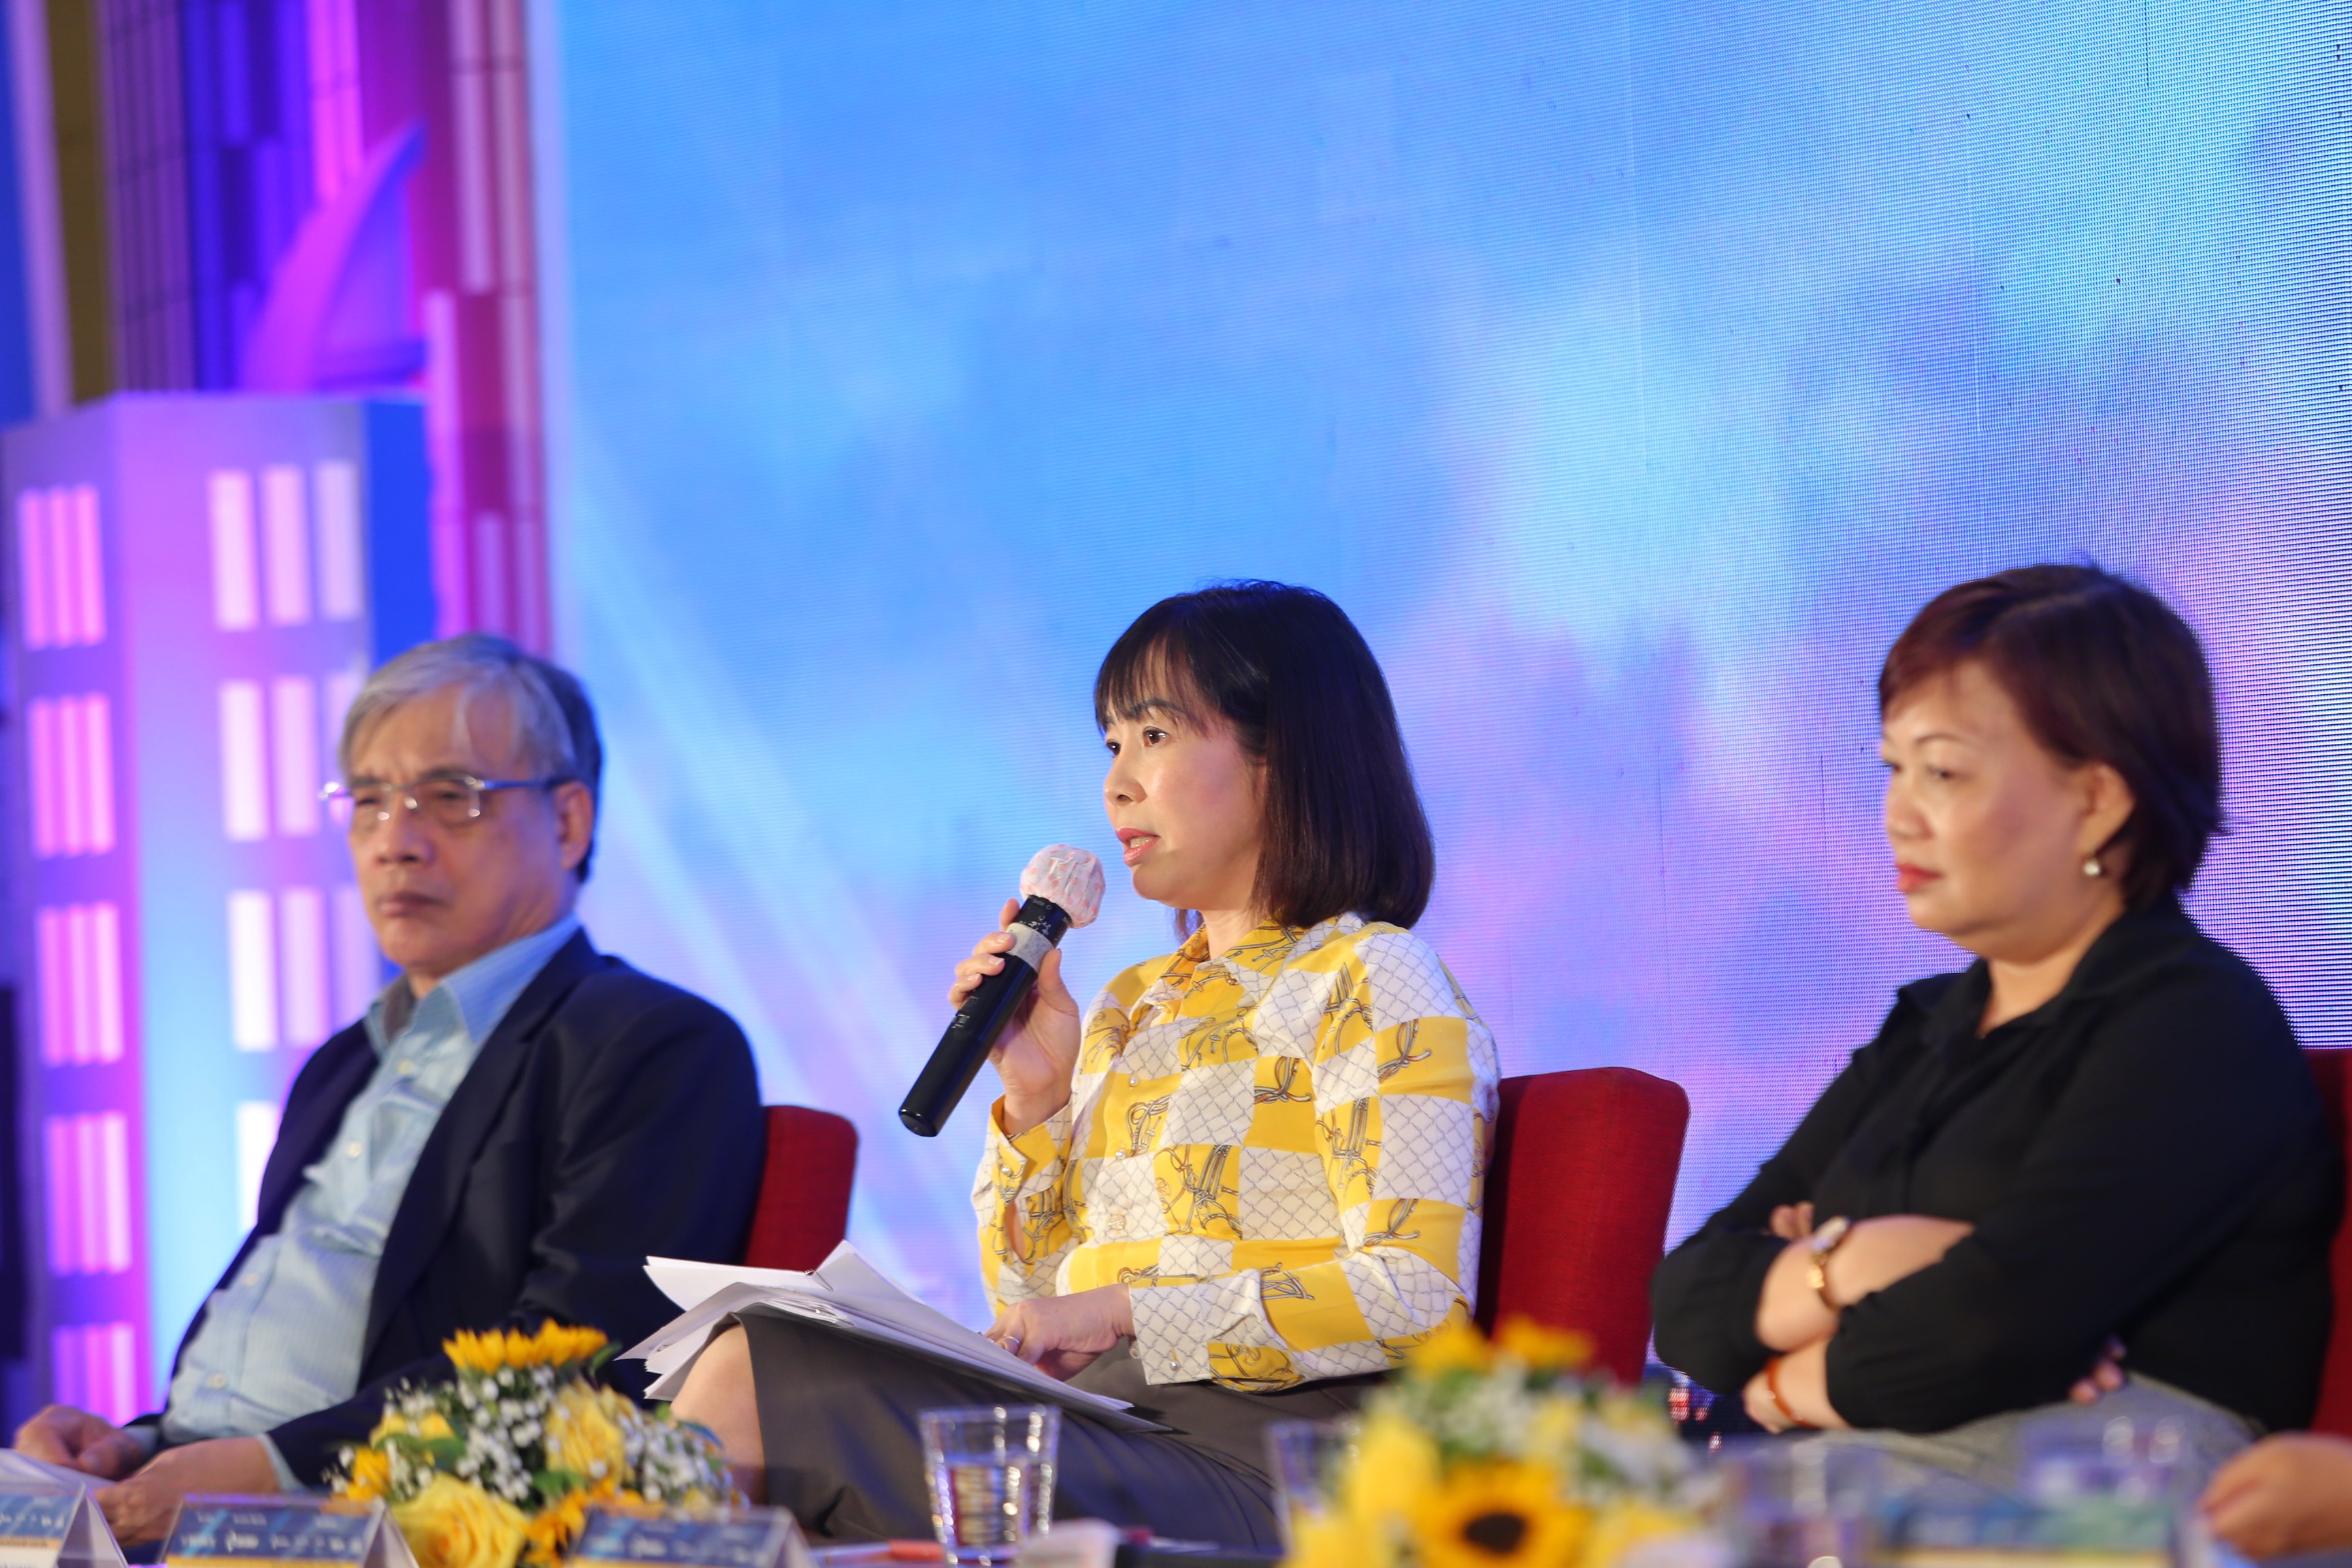 Giám đốc Sở Du lịch thành phố Đà Nẵng, bà Trương Thị Hồng Hạnh  cho biết sẽ Thành phố sẽ tạo nên những sản phẩm du lịch đặc sắc.